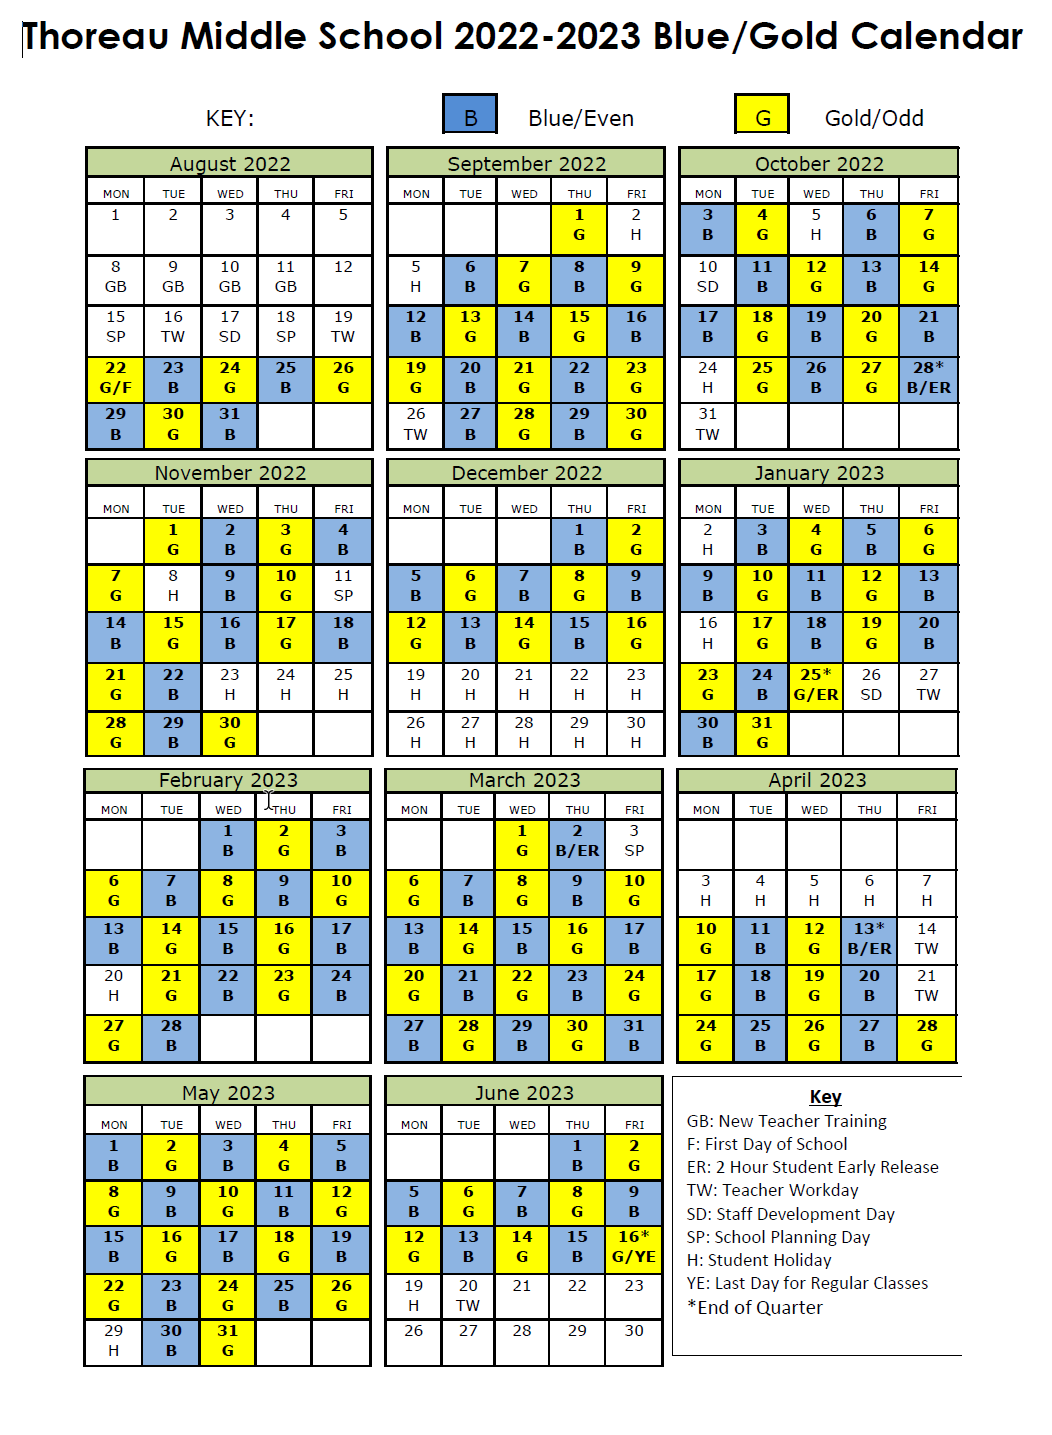 Blue/Gold Day Calendar Thoreau Middle School